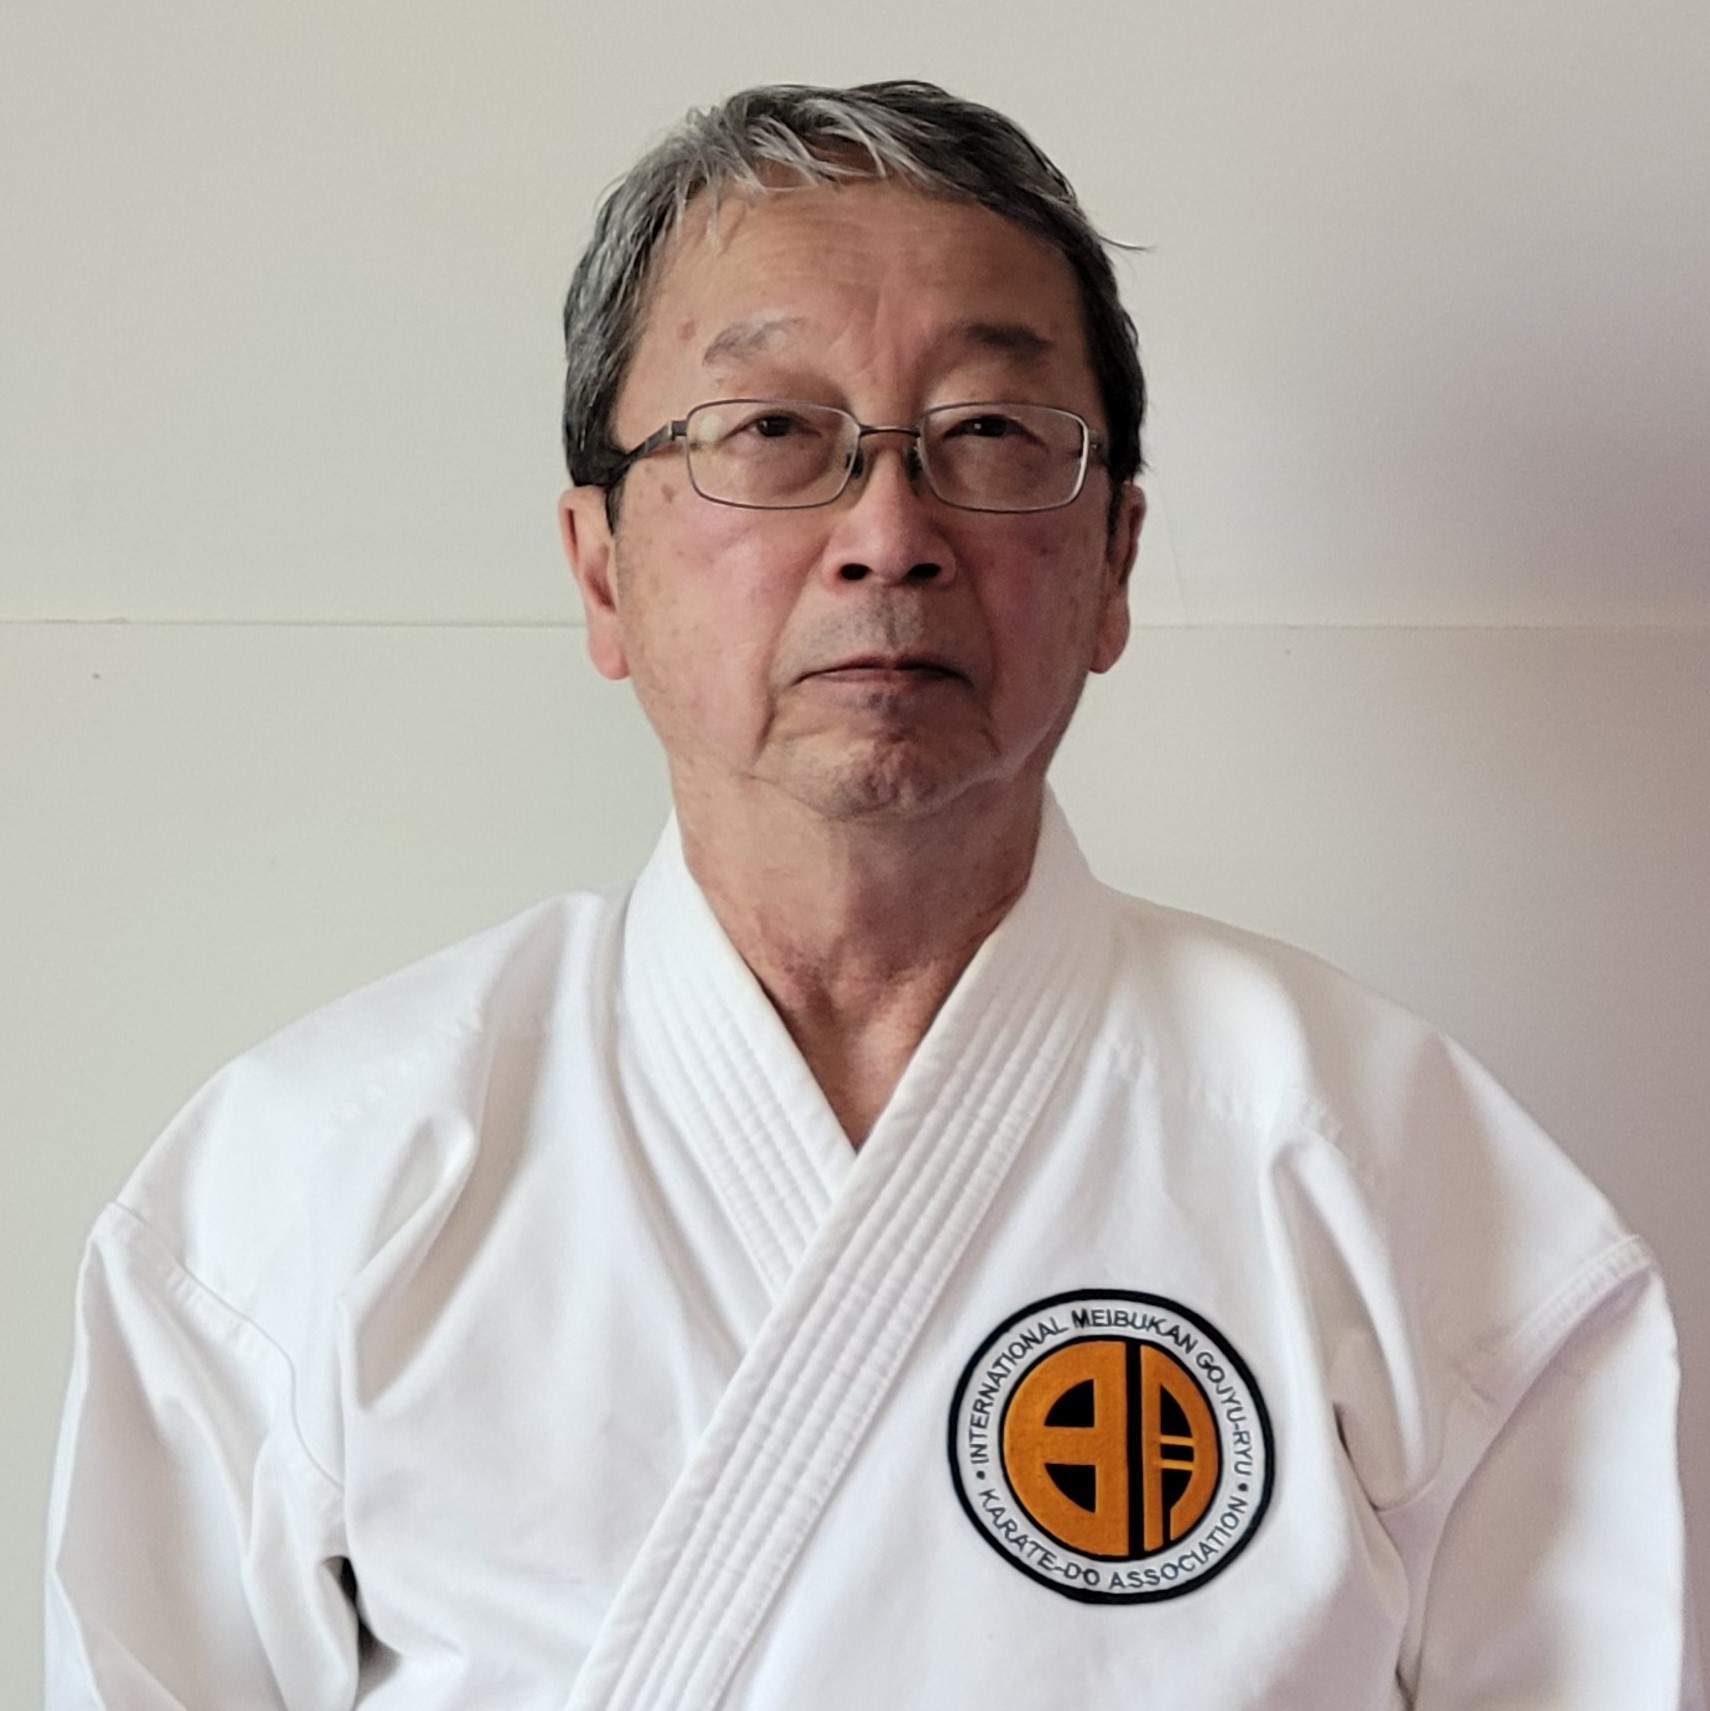 Sōgen Meibukan Karate